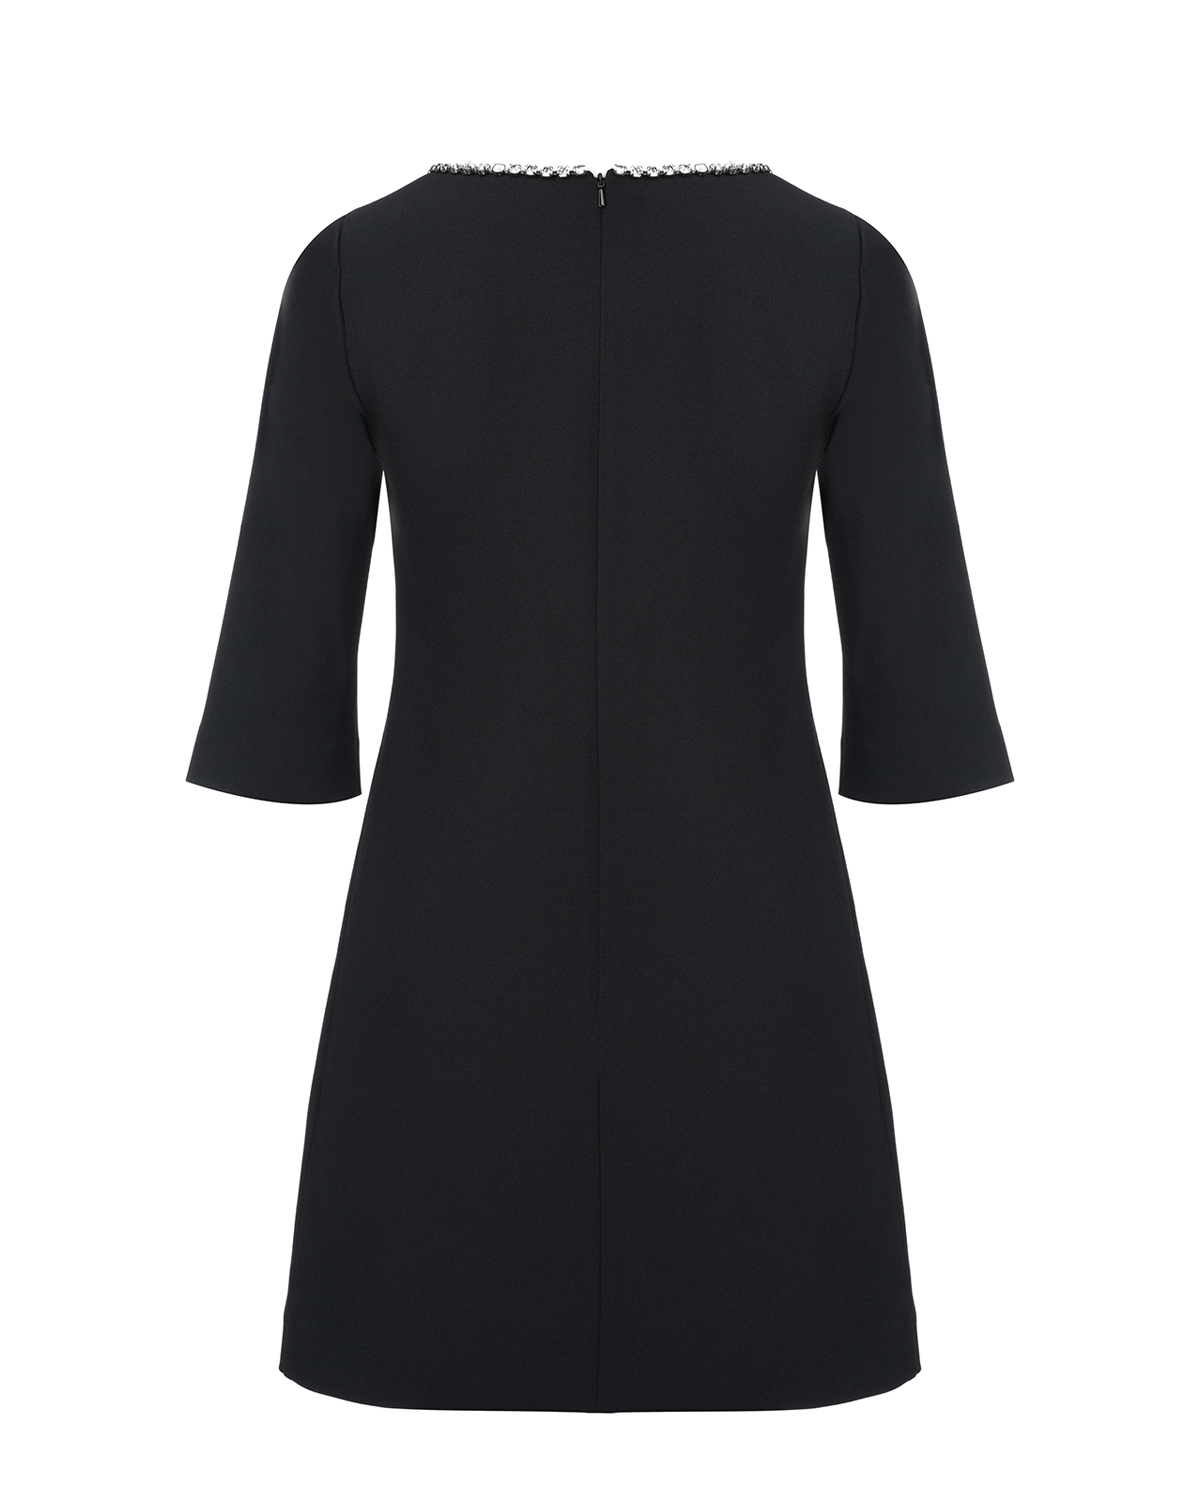 Черное платье с рукавами 3/4 Vivetta, размер 42, цвет черный Черное платье с рукавами 3/4 Vivetta - фото 2